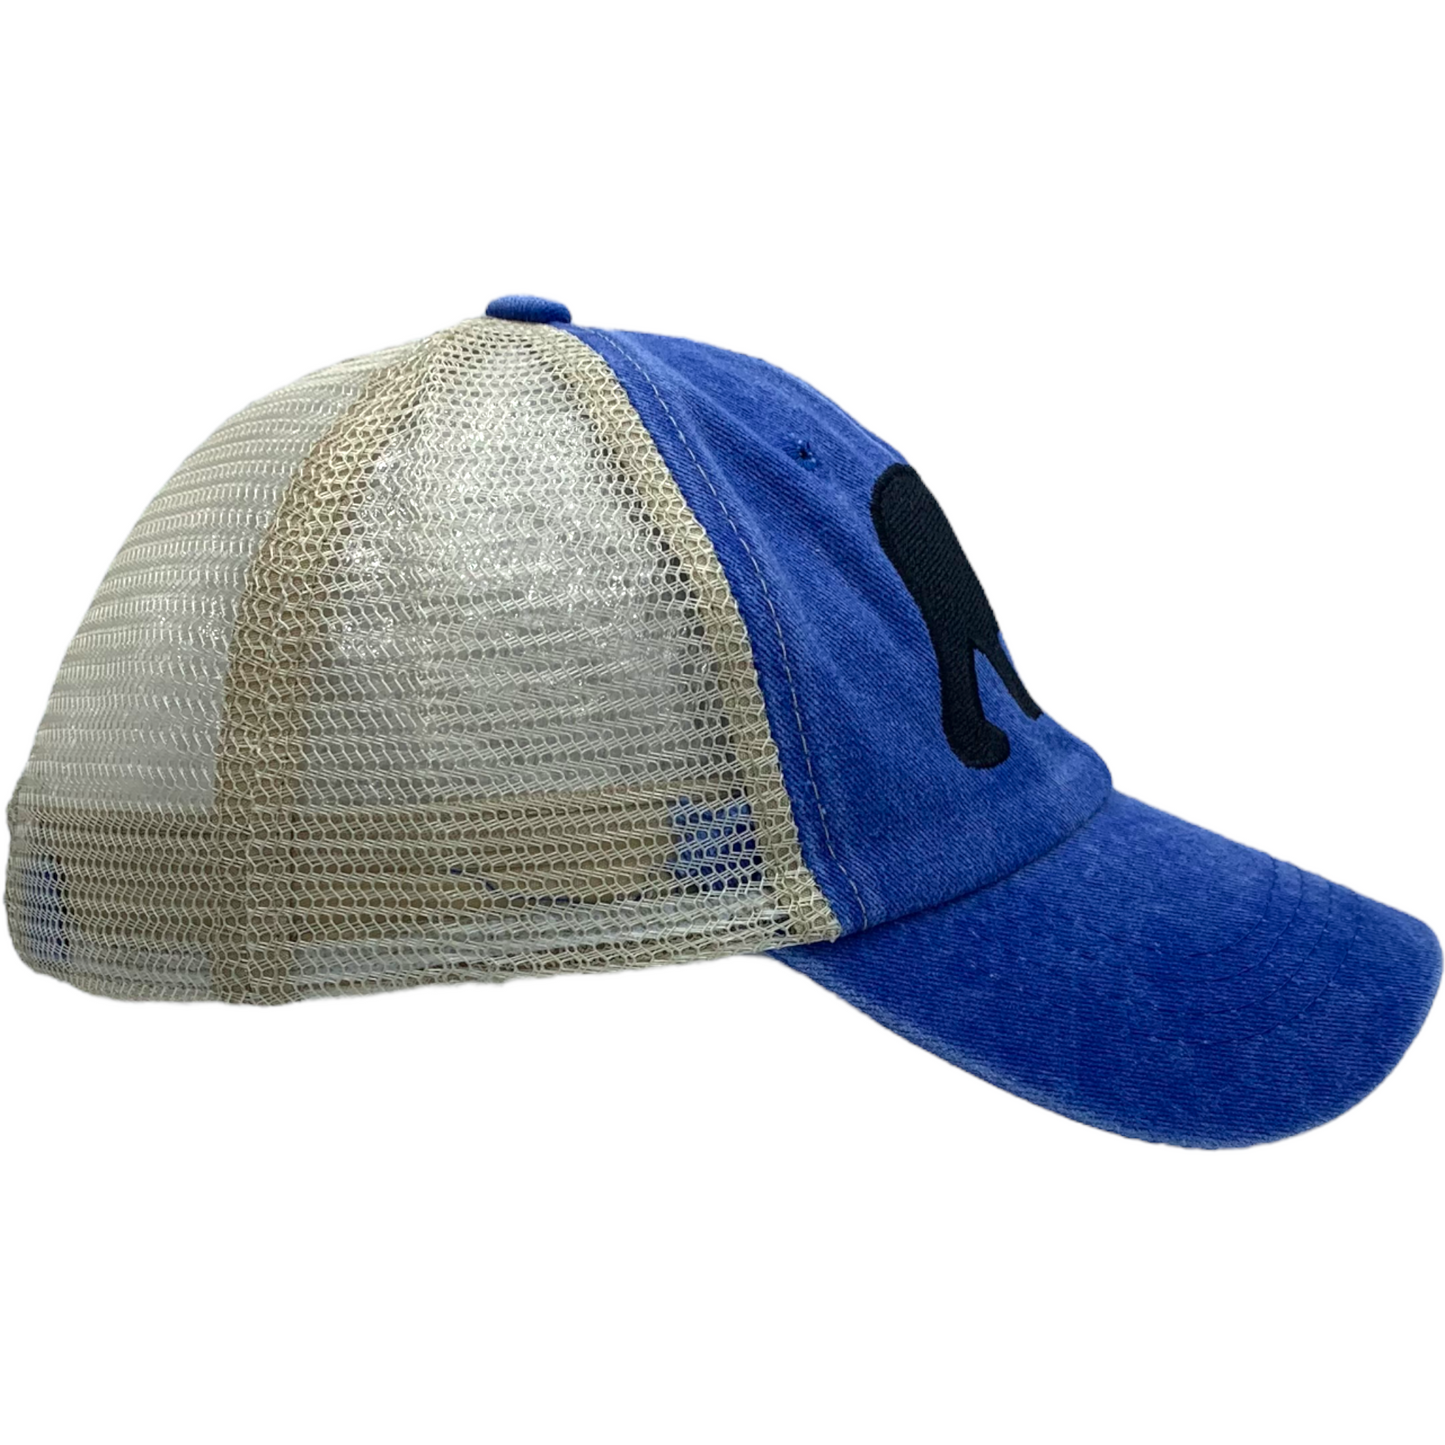 Burton's Stroll Blue Vintage Trucker Baseball Hat - The ASHEVILLE Co. TM